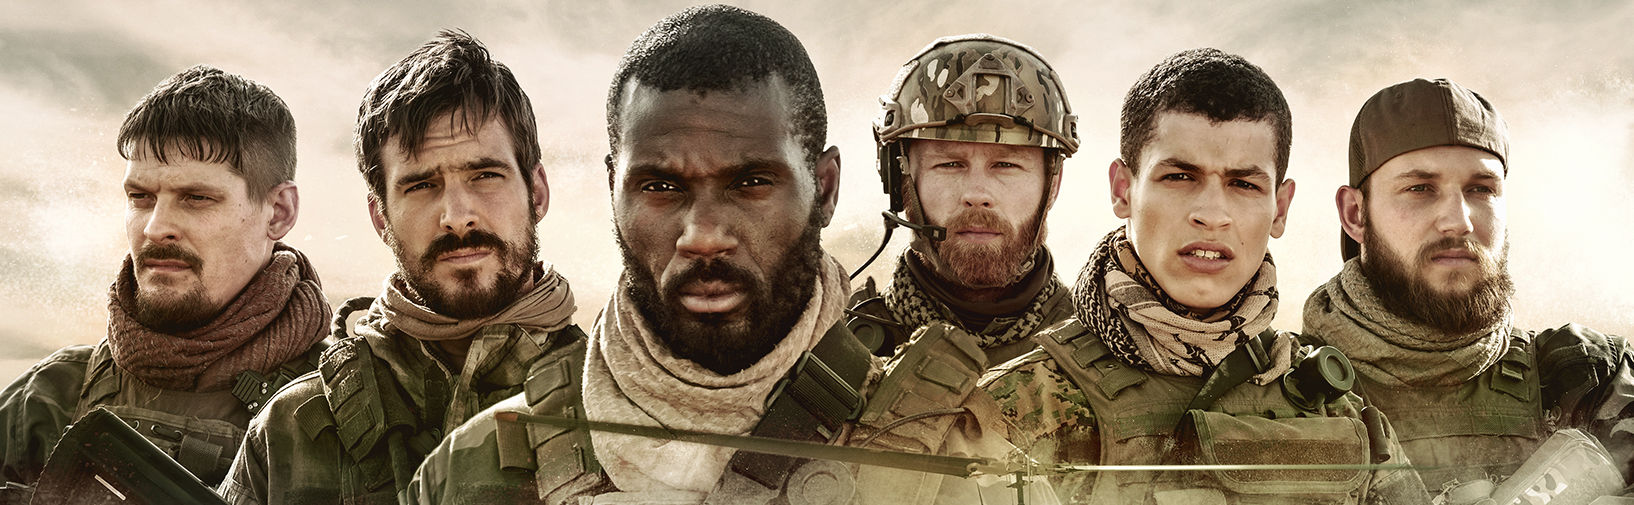 Thrillerserie Commando’s binnenkort te zien in Verenigde Staten, Canada en Australië en meer internationaal succes NL Film  hero image